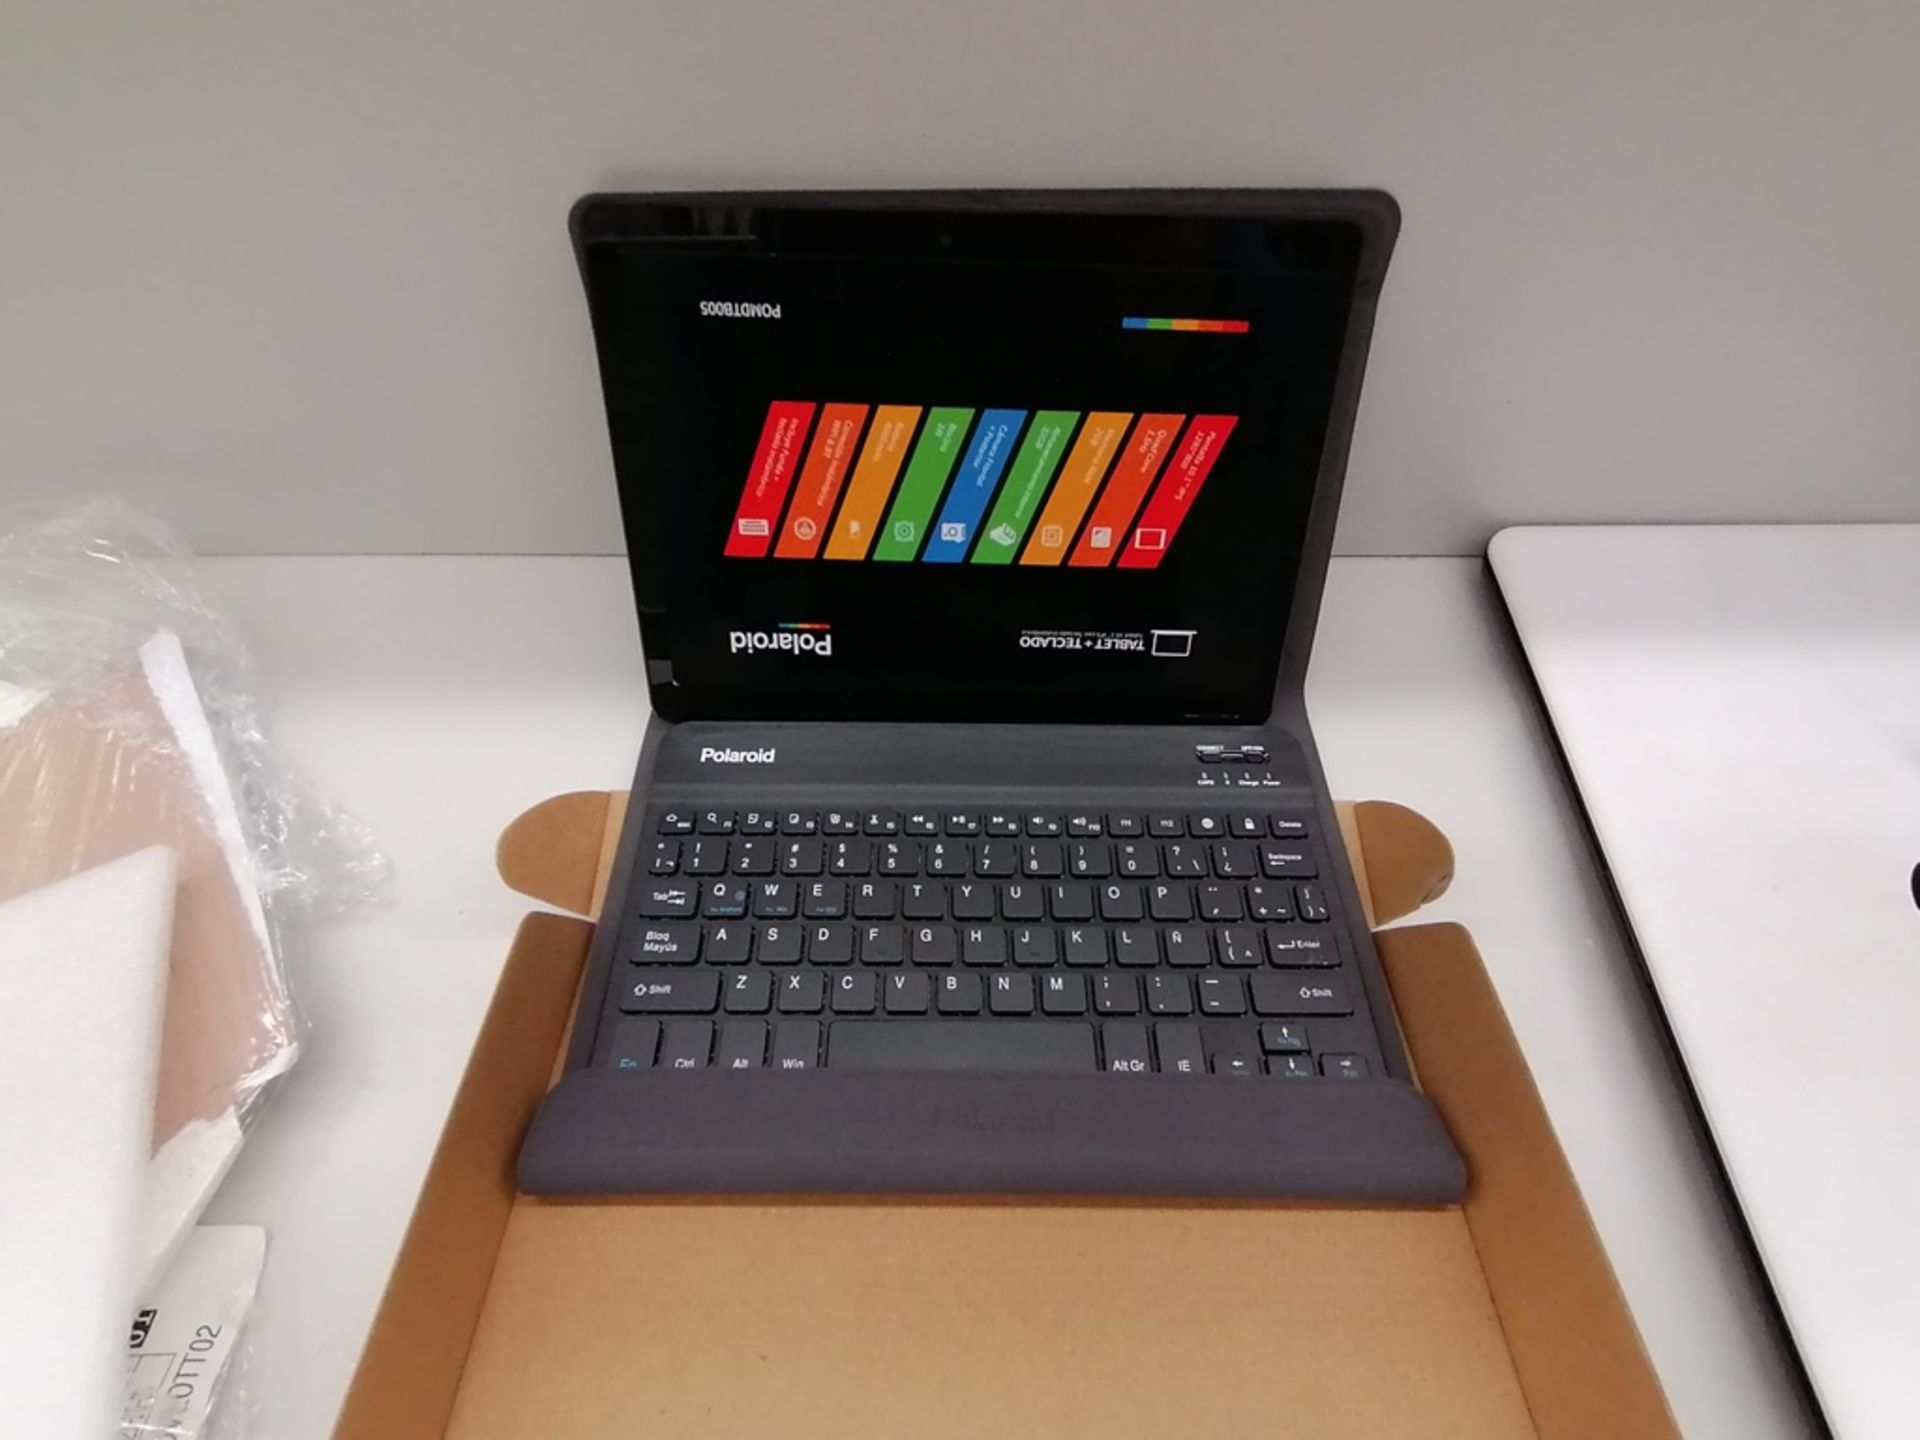 1 Lote de Mini-Lap + Tablet incluye: 1 Tablet Polaroid, Modelo POMDTB005, Serie 00536912, 2GB RAM + - Image 3 of 13